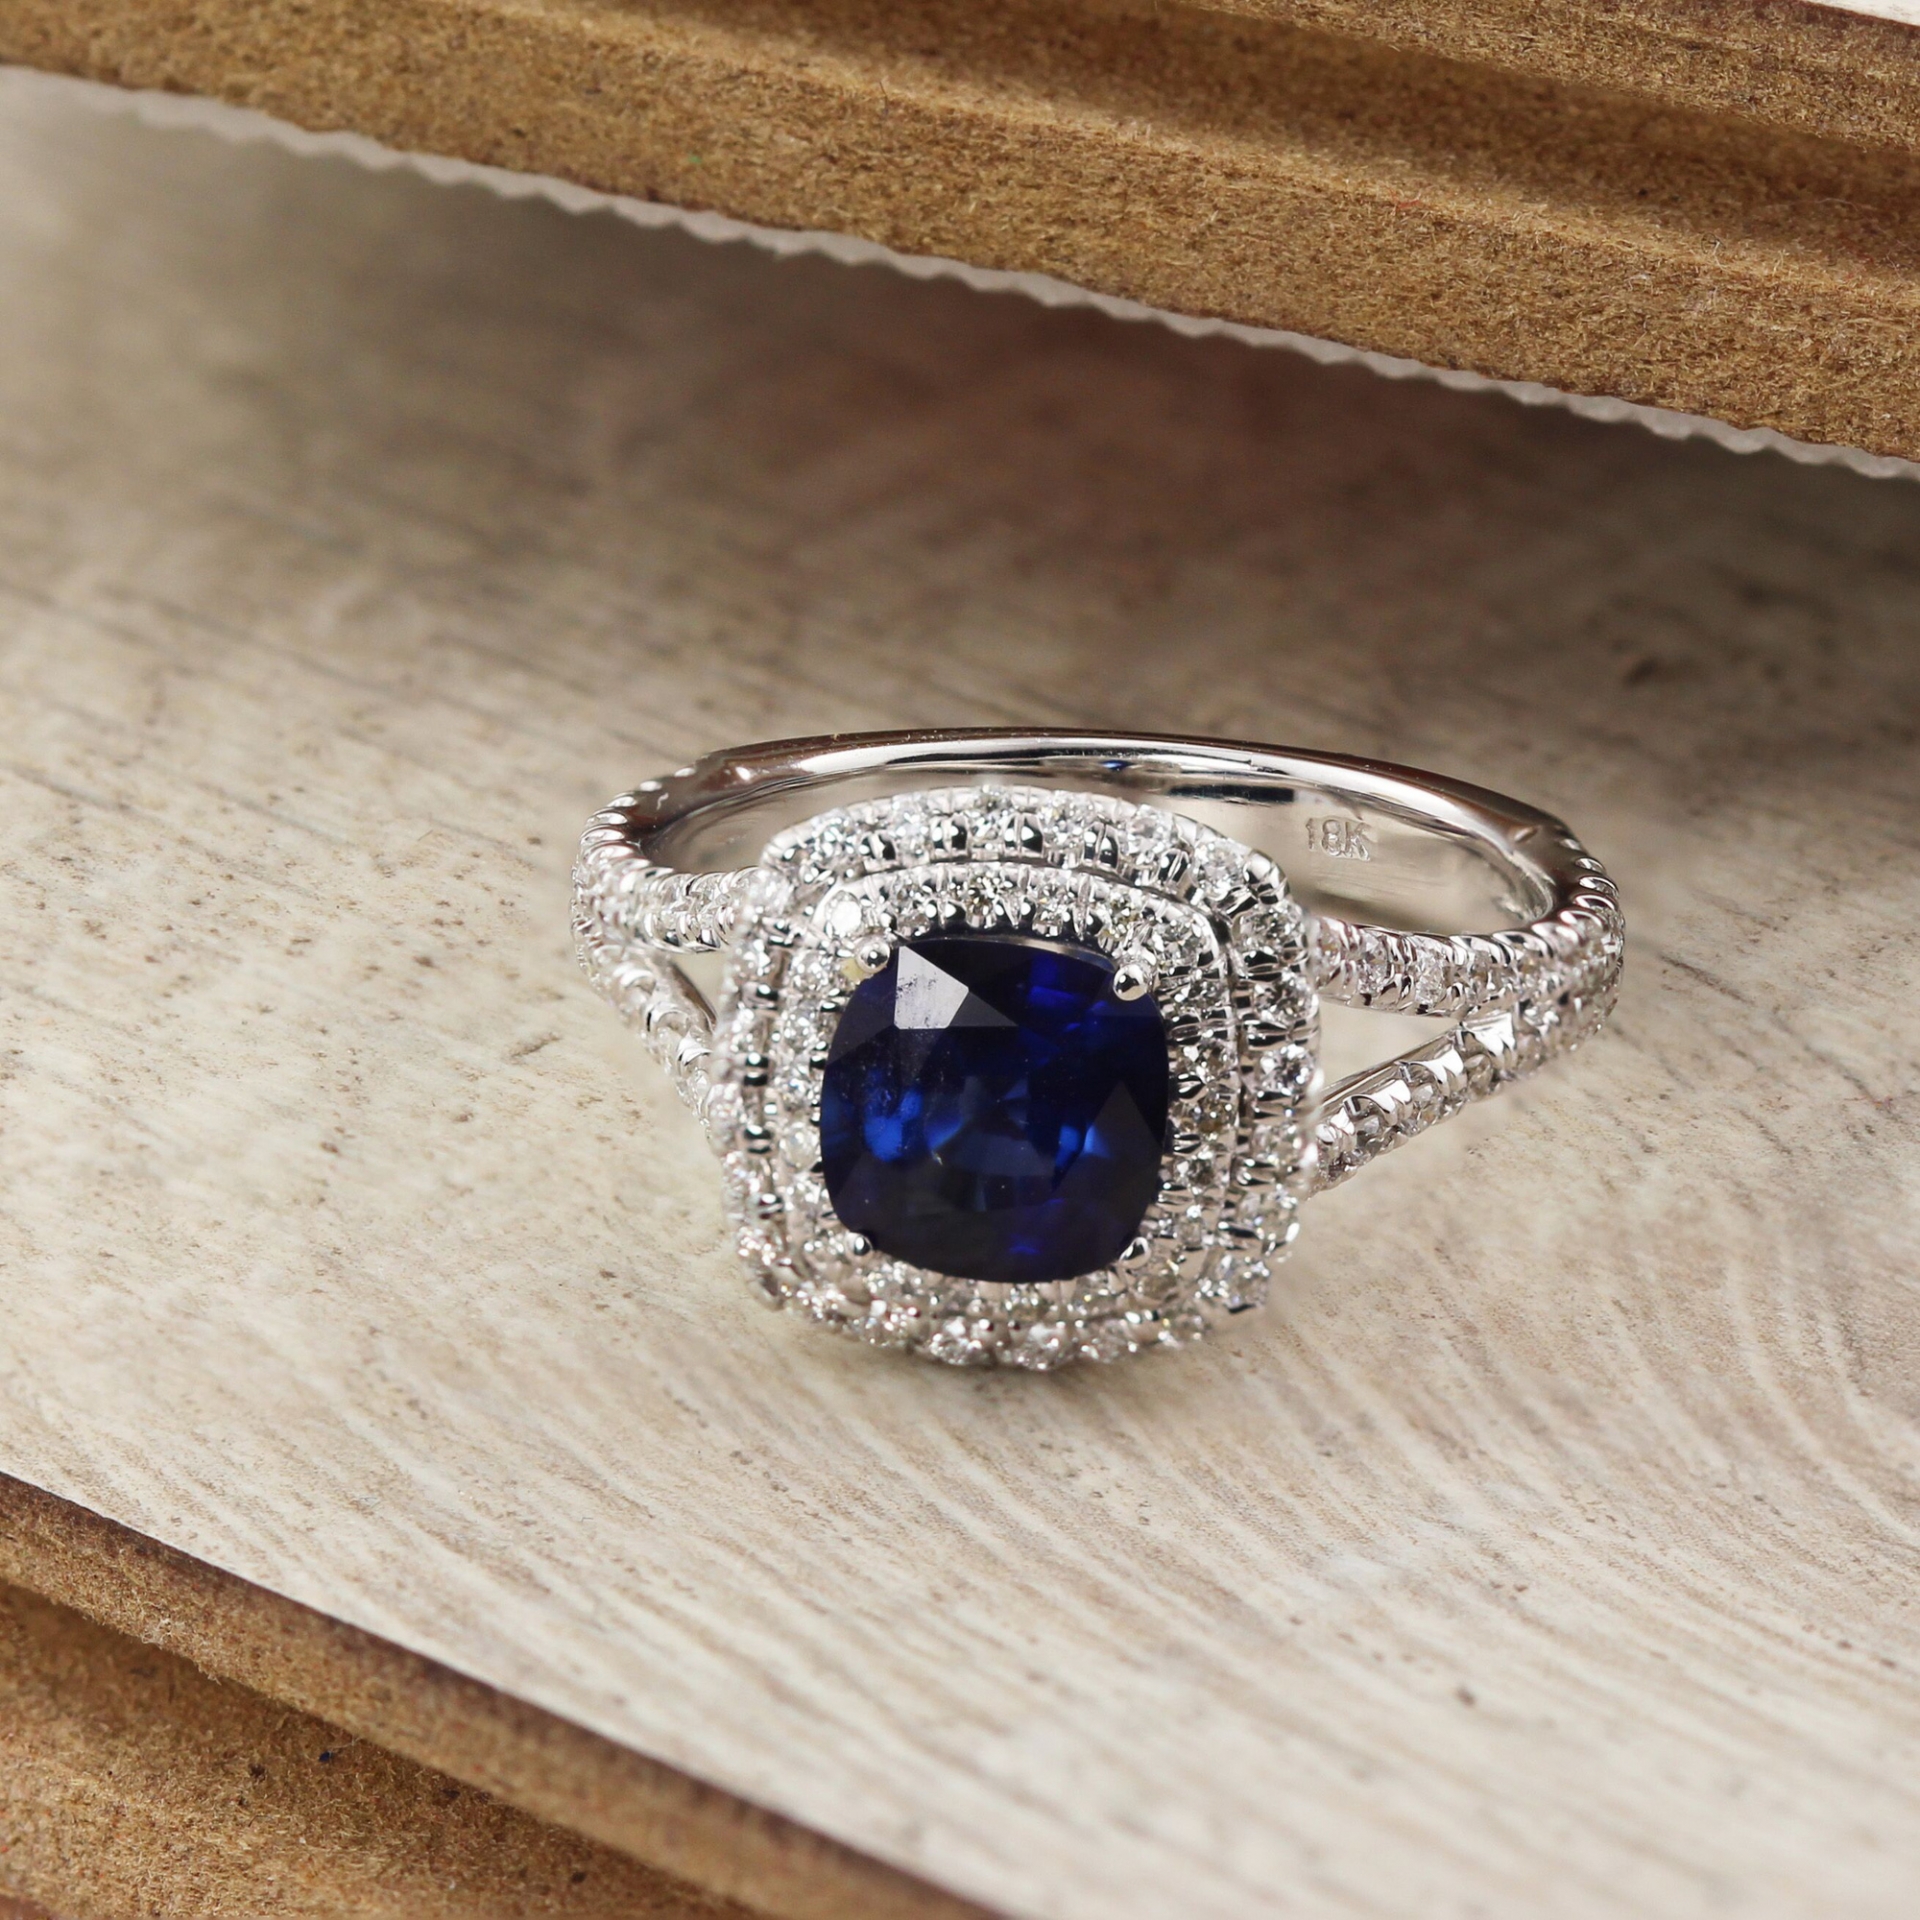 Chiếc nhẫn cưới màu xanh được cho rất phù hơp với cặp đôi.